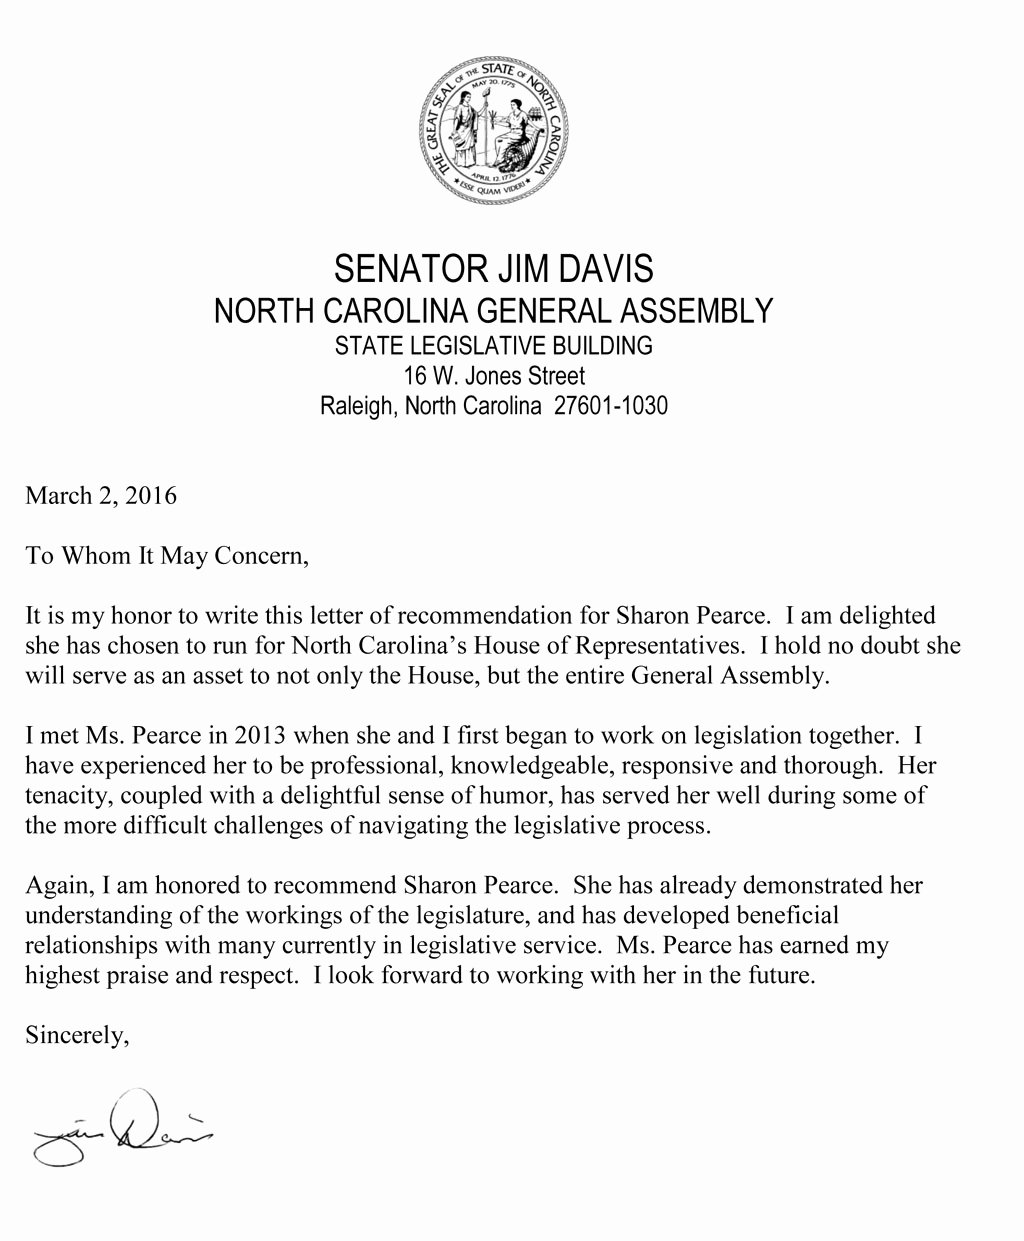 Letter to Senator format Inspirational Re Mendation Letter From Senator Jim Davis